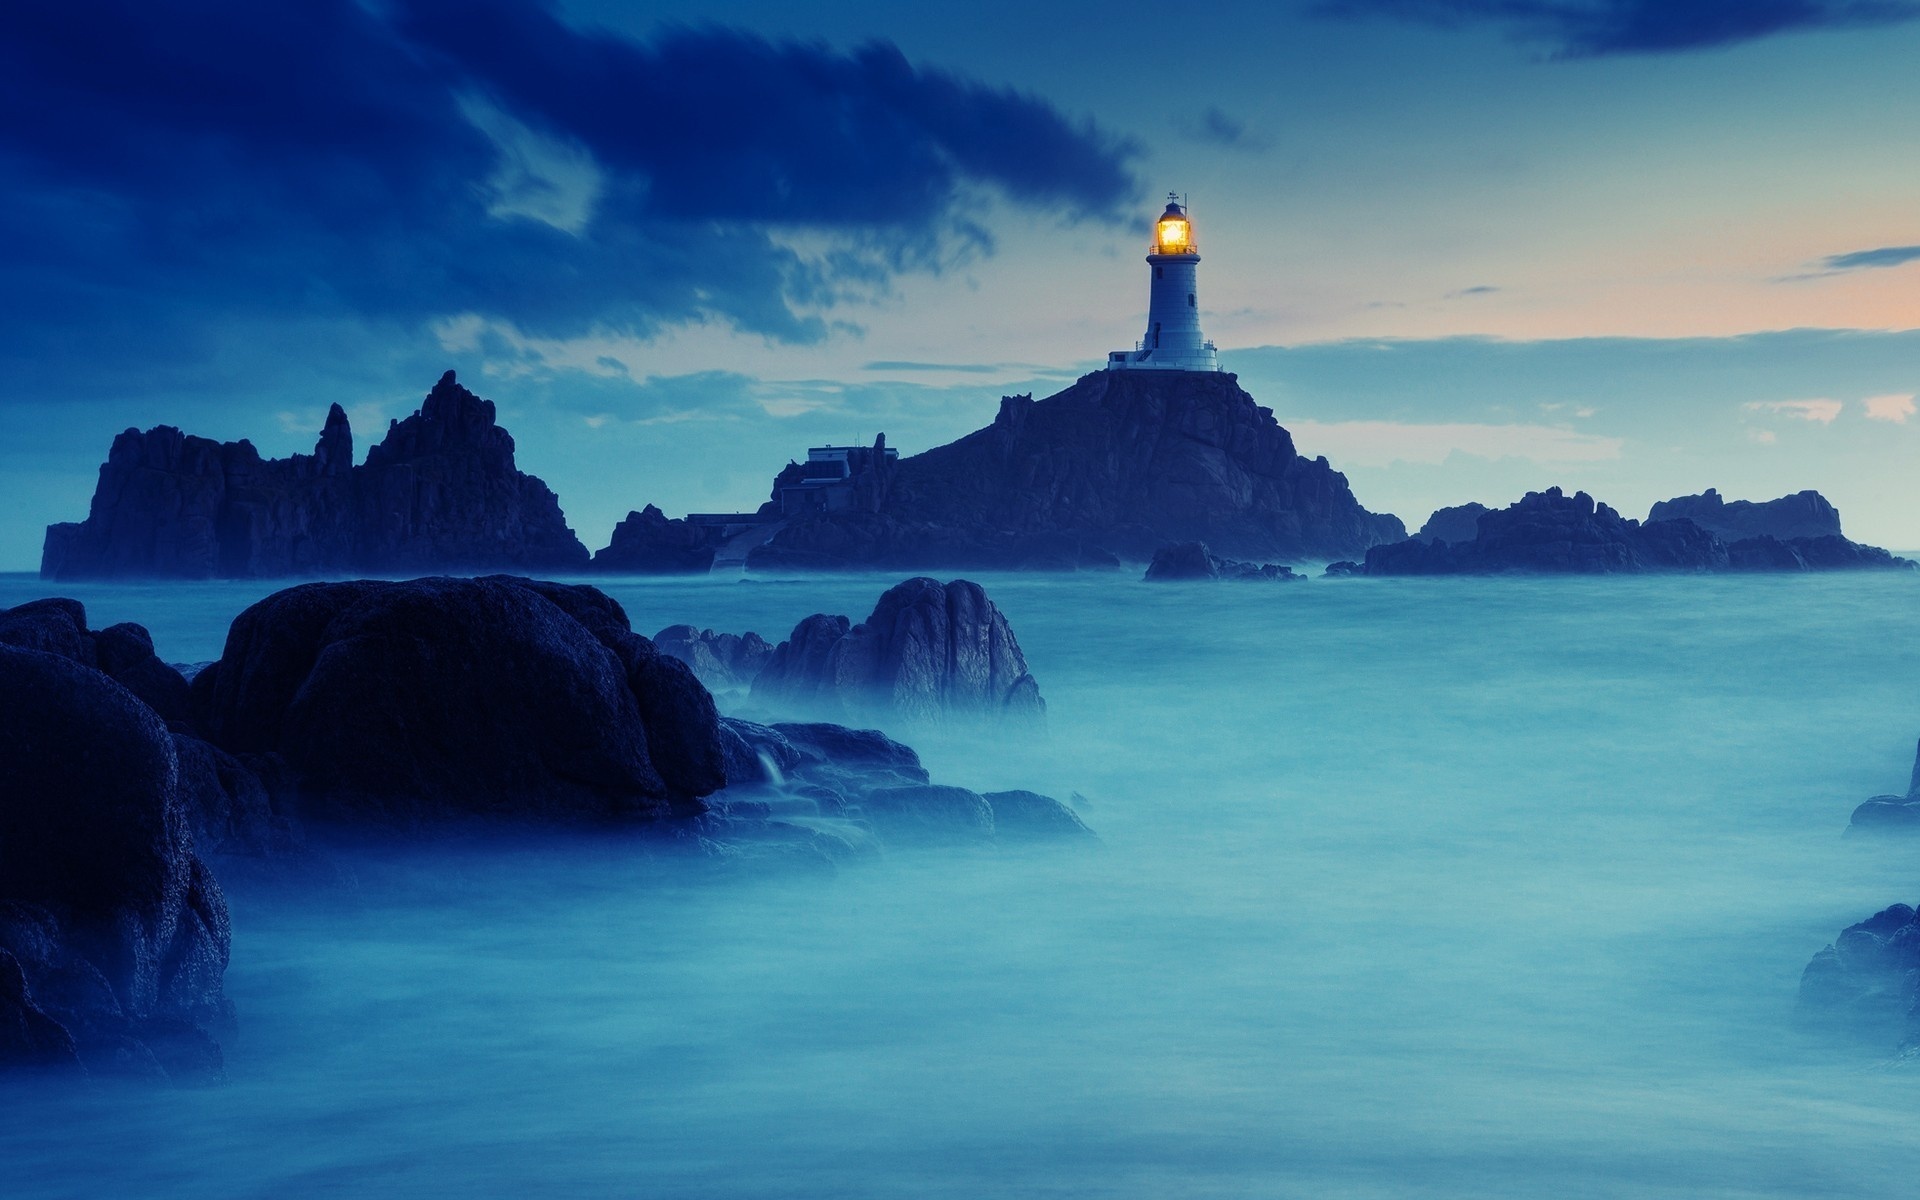 Tận hưởng một món quà đặc biệt với những hình nền Ánh đèn biển miễn phí, tuyệt đẹp và đặc sắc. Vào thời điểm này, bạn sẽ có những ngọn đèn lighthouse tuyệt đẹp đắp đầy cả bức ảnh. Chúng sẽ làm cho ngày của bạn thêm đẹp và thơ mộng.